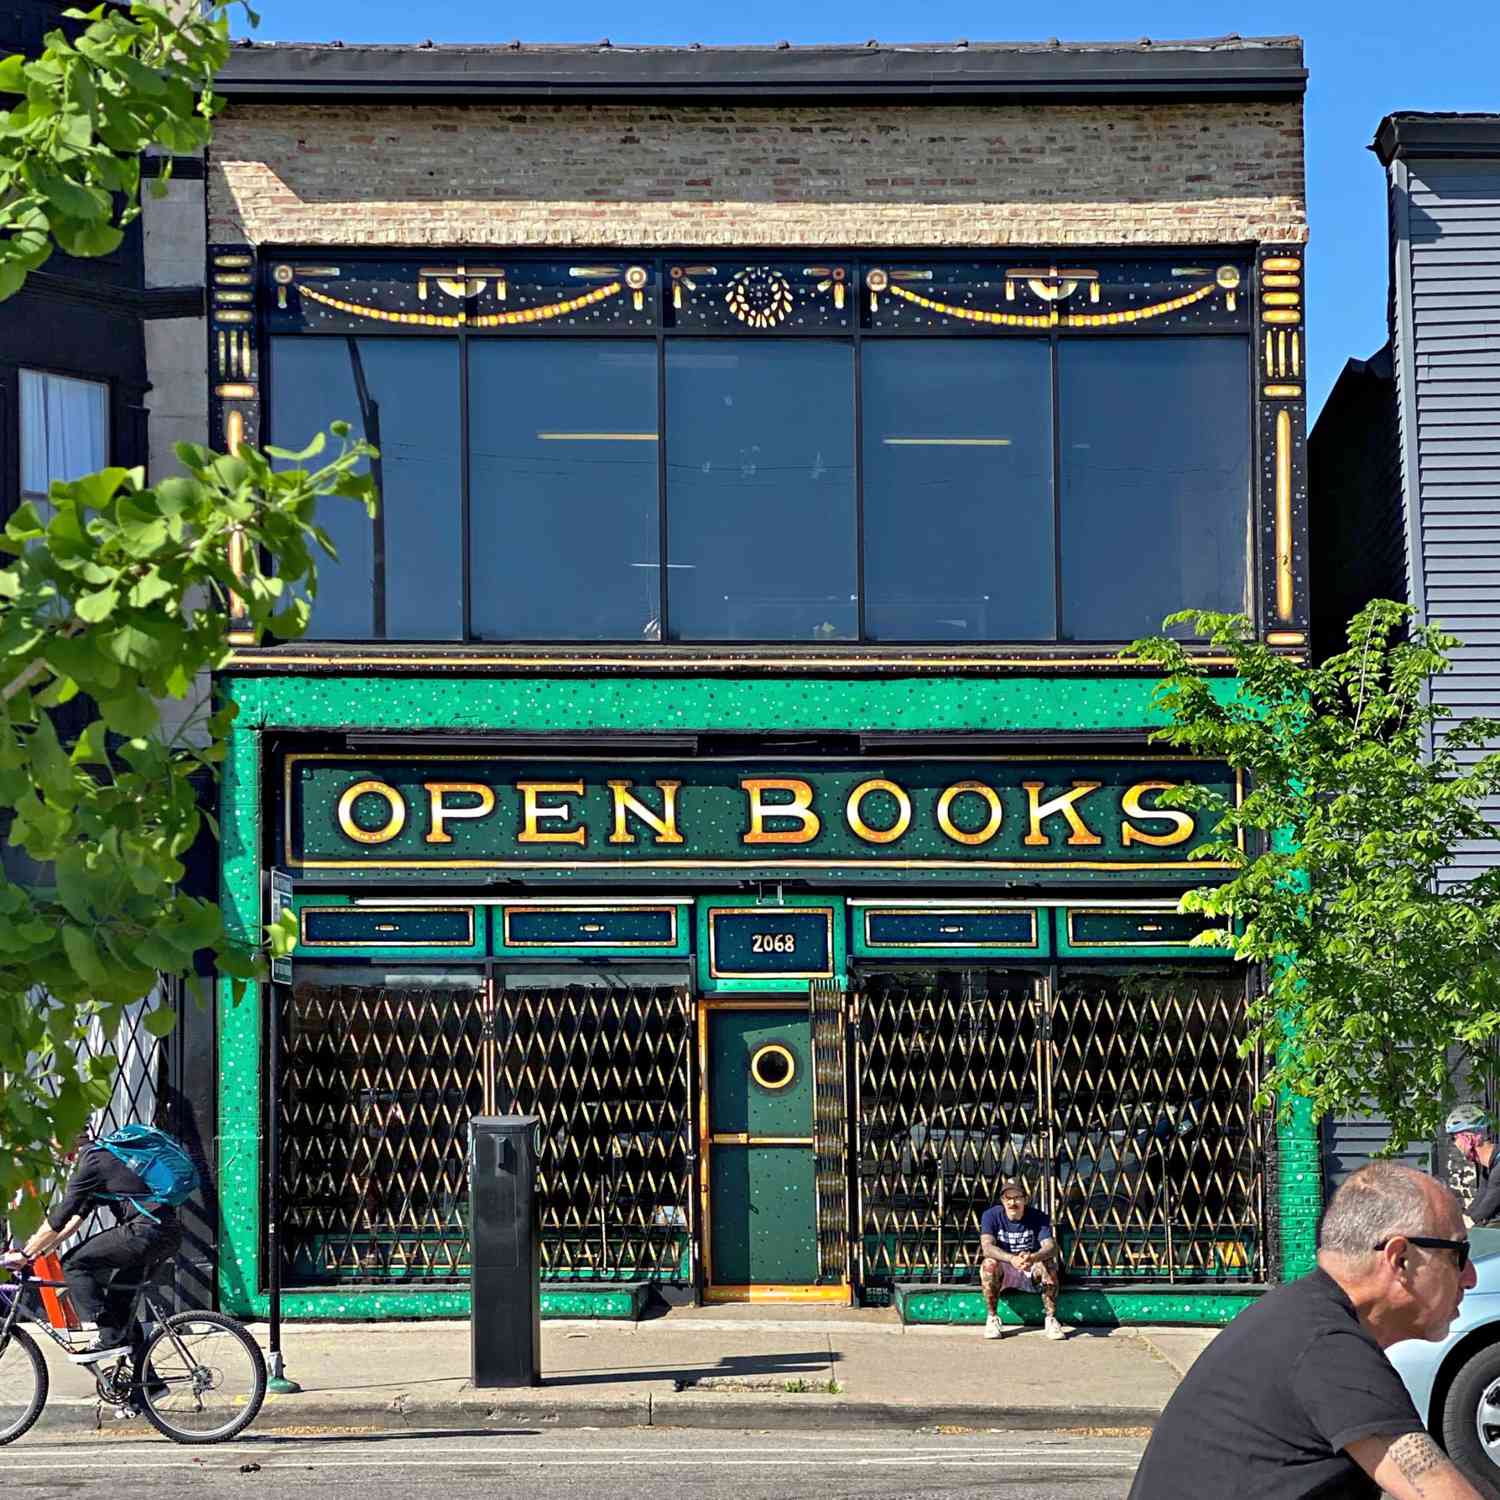 OPen Books Logan Square Chicago